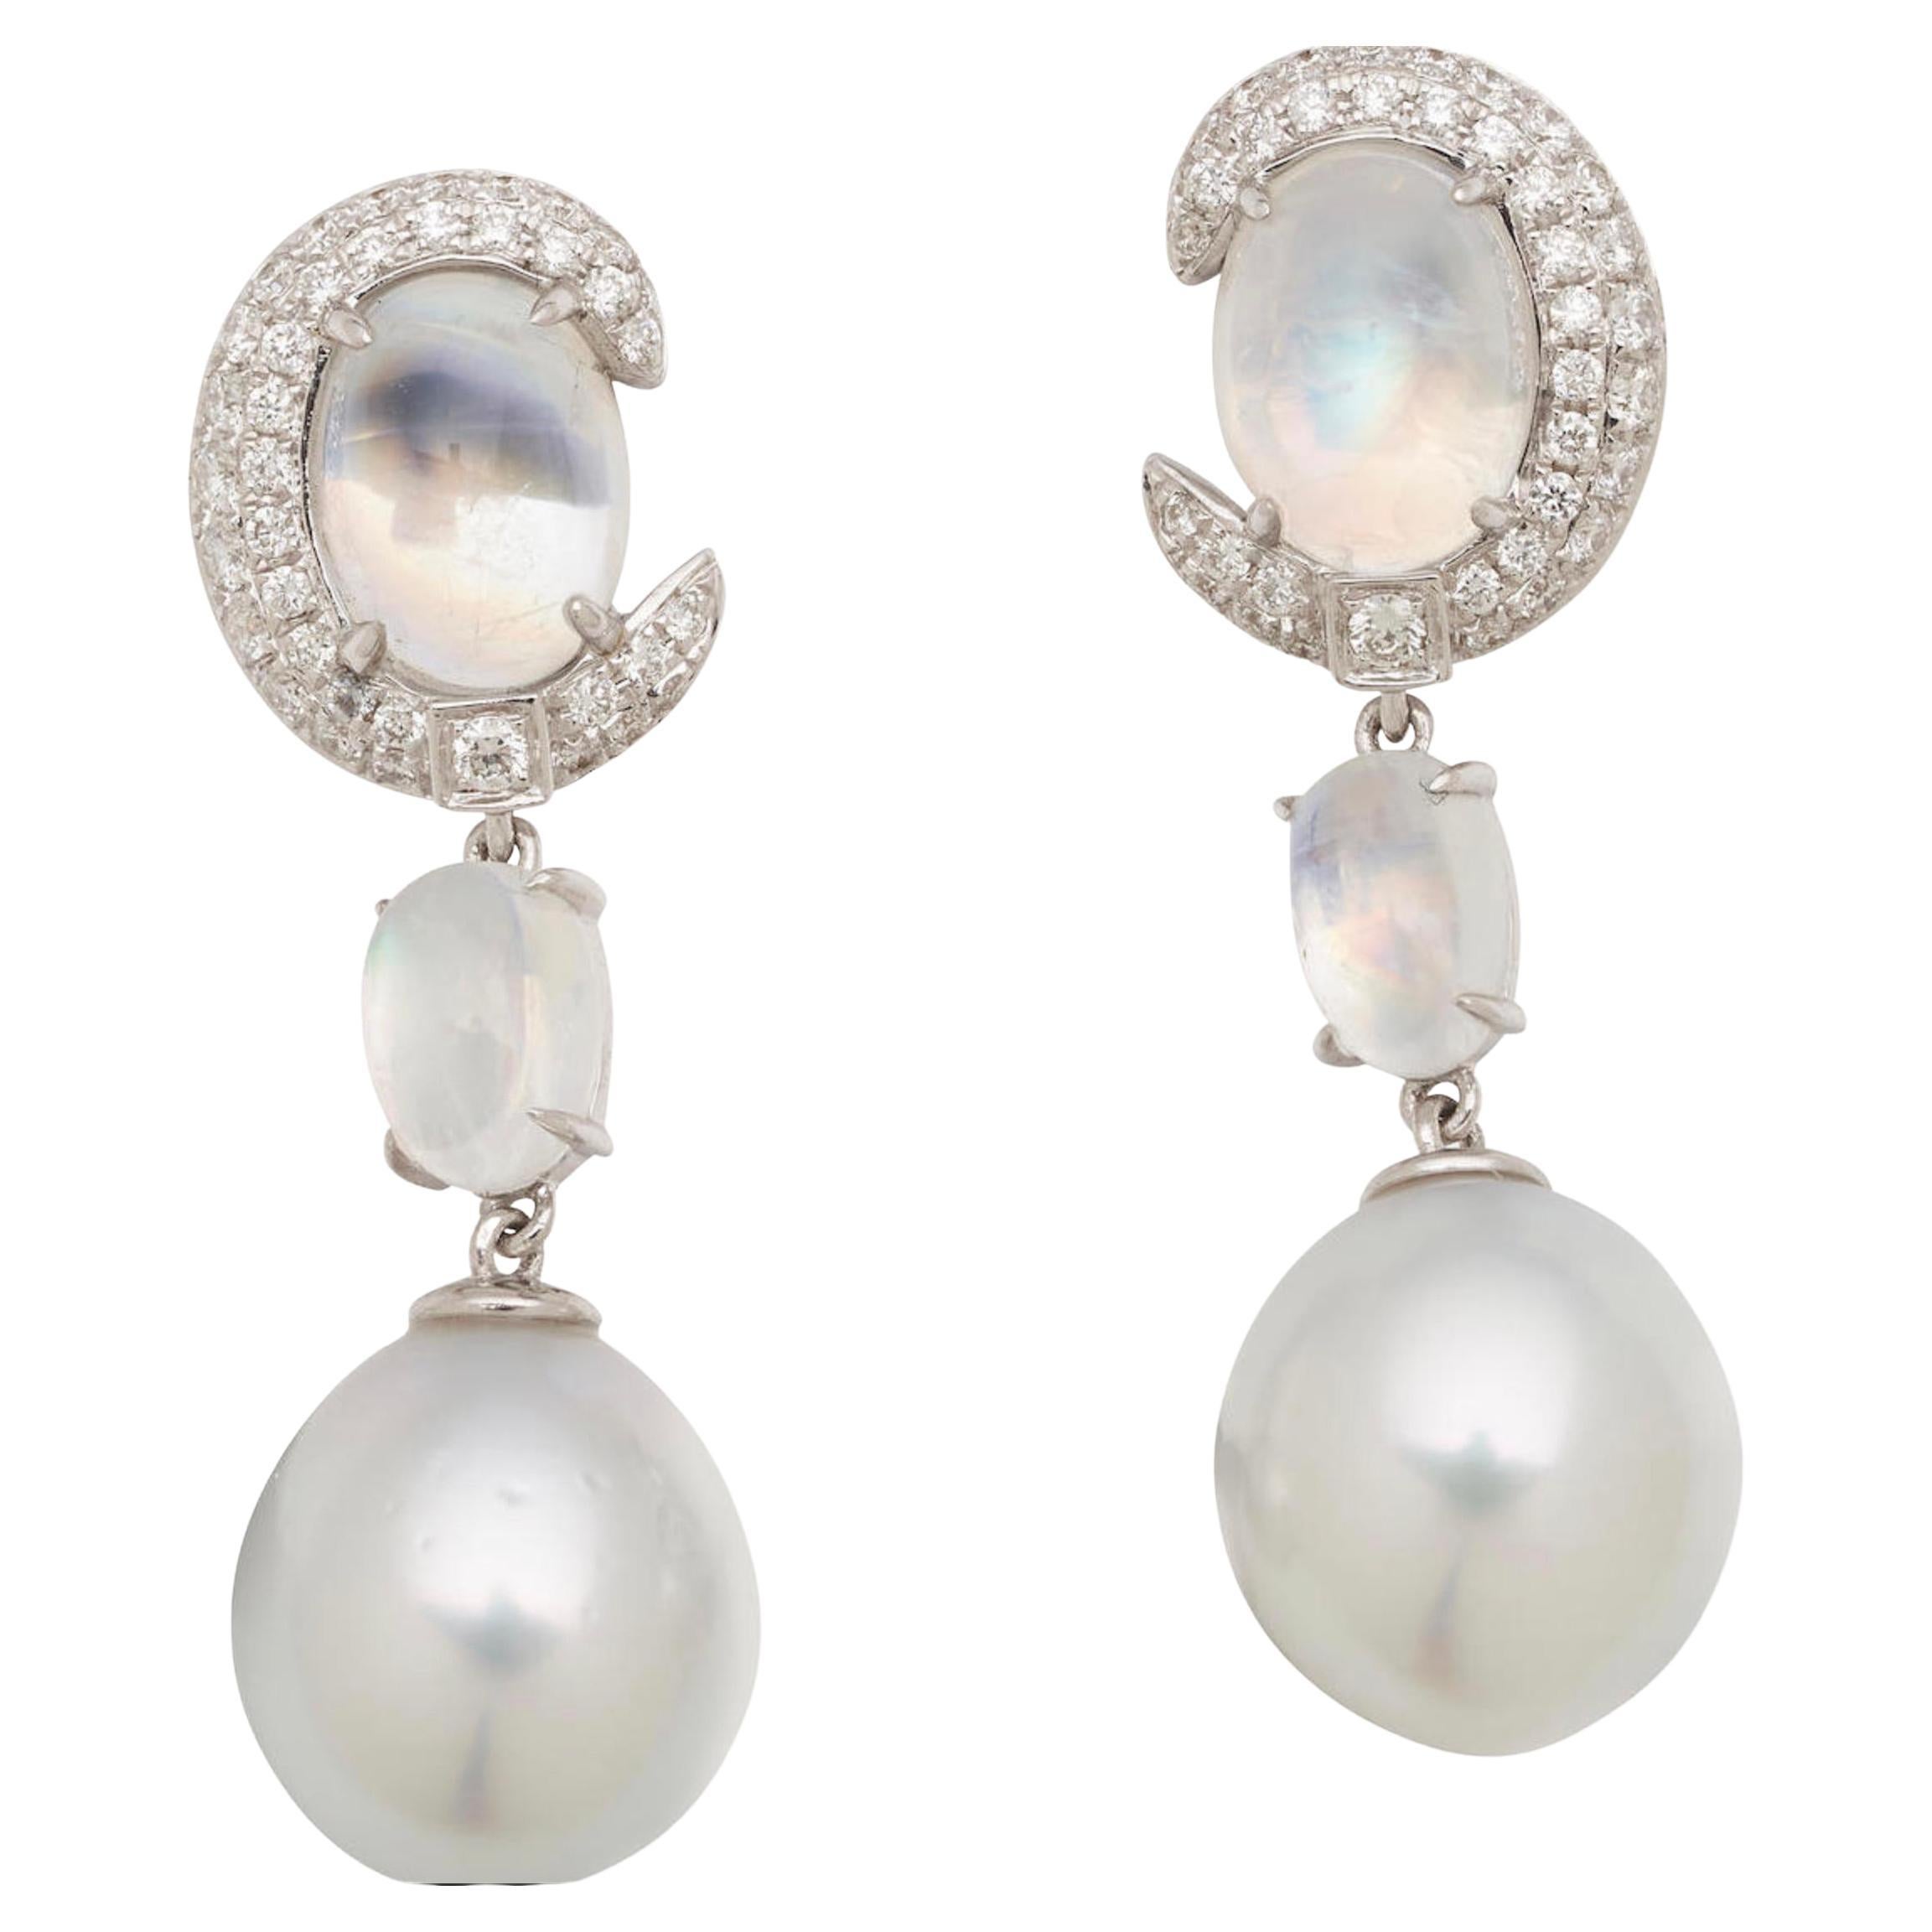 Boucles d'oreilles en or 18 carats avec pierre de lune émeraude, perle blanche des mers du Sud et diamants